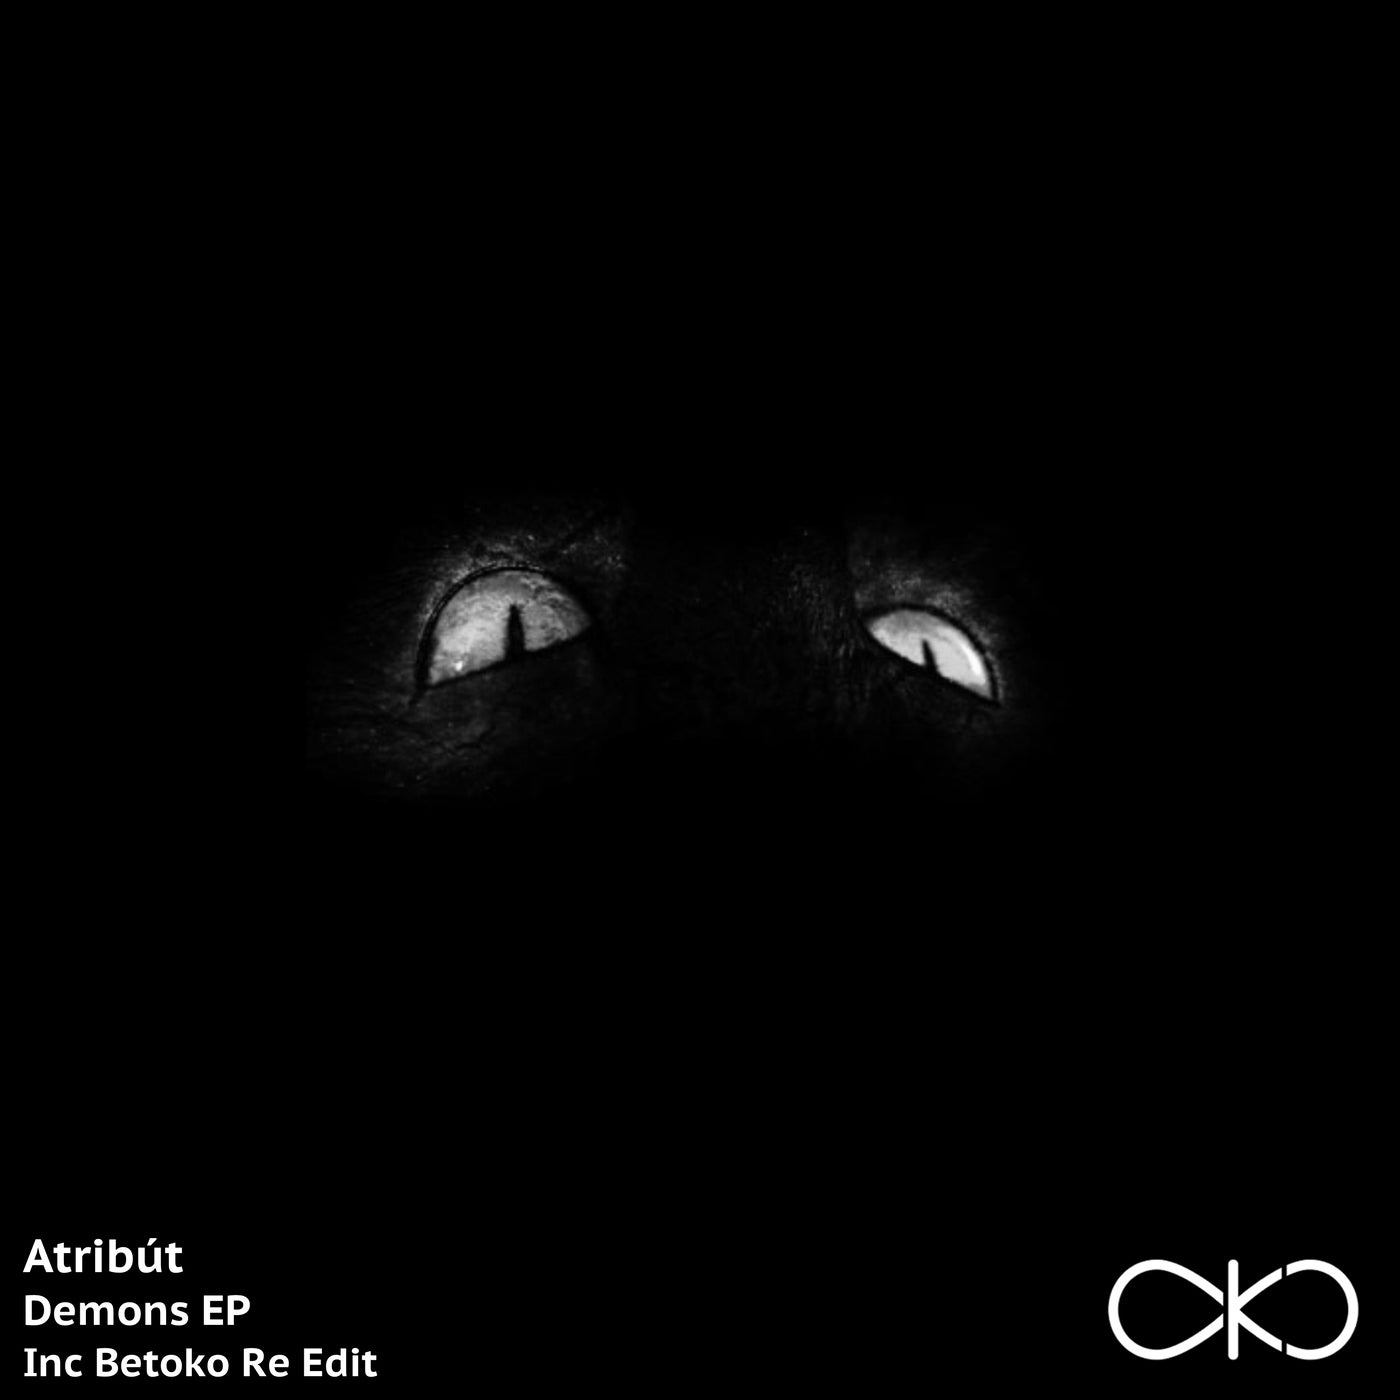 image cover: Atribut - Demons EP / OKO061